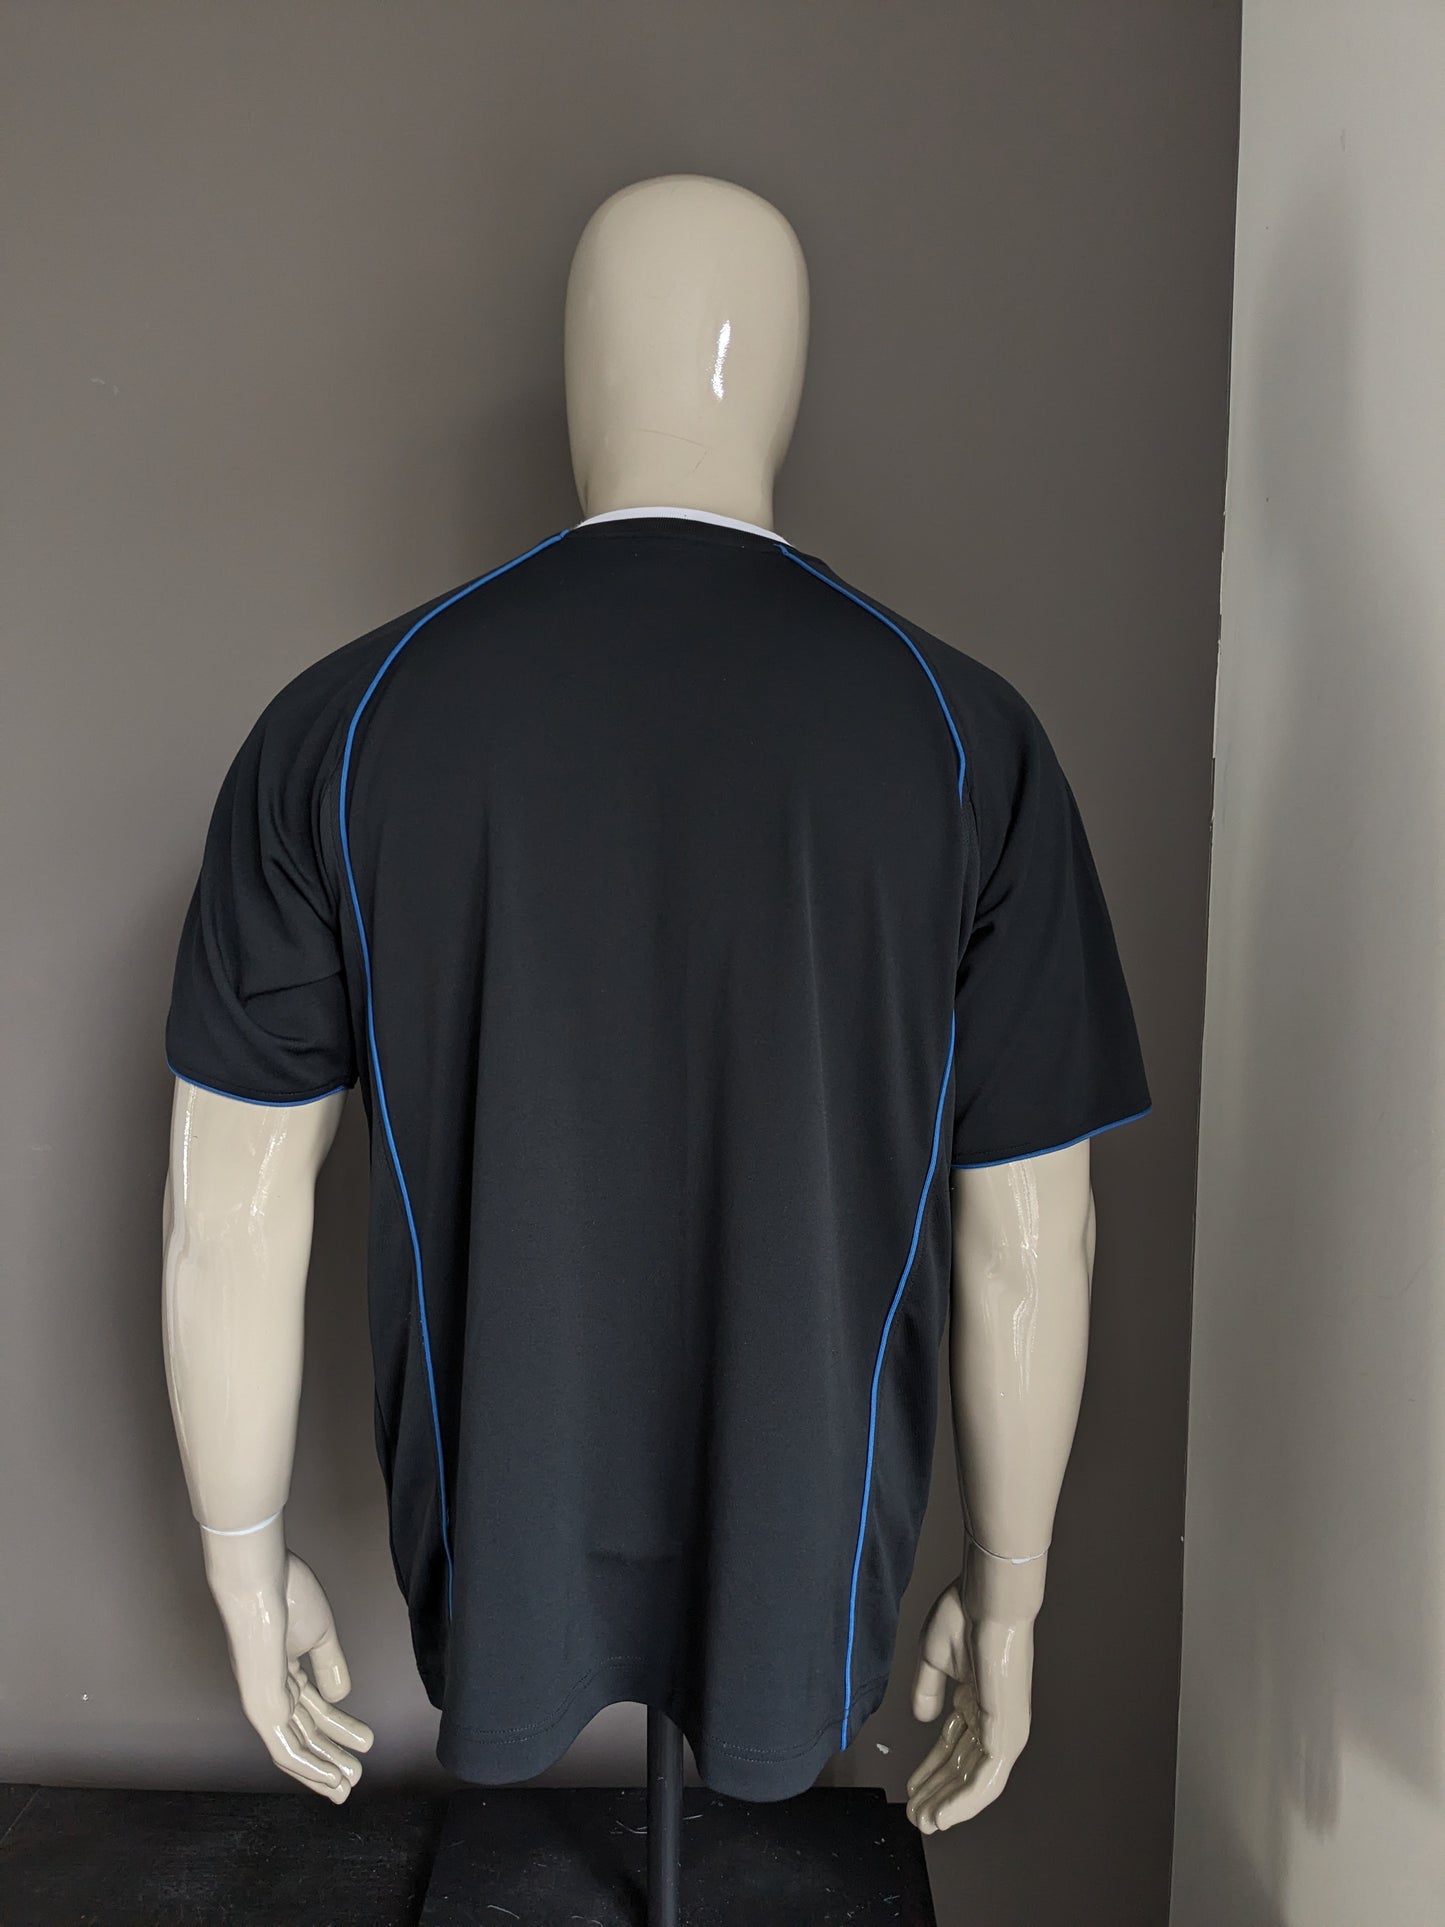 Vintage Kappa Sport-Shirt mit V-Ausschnitt. Schwarz gefärbt. Größe M / L.